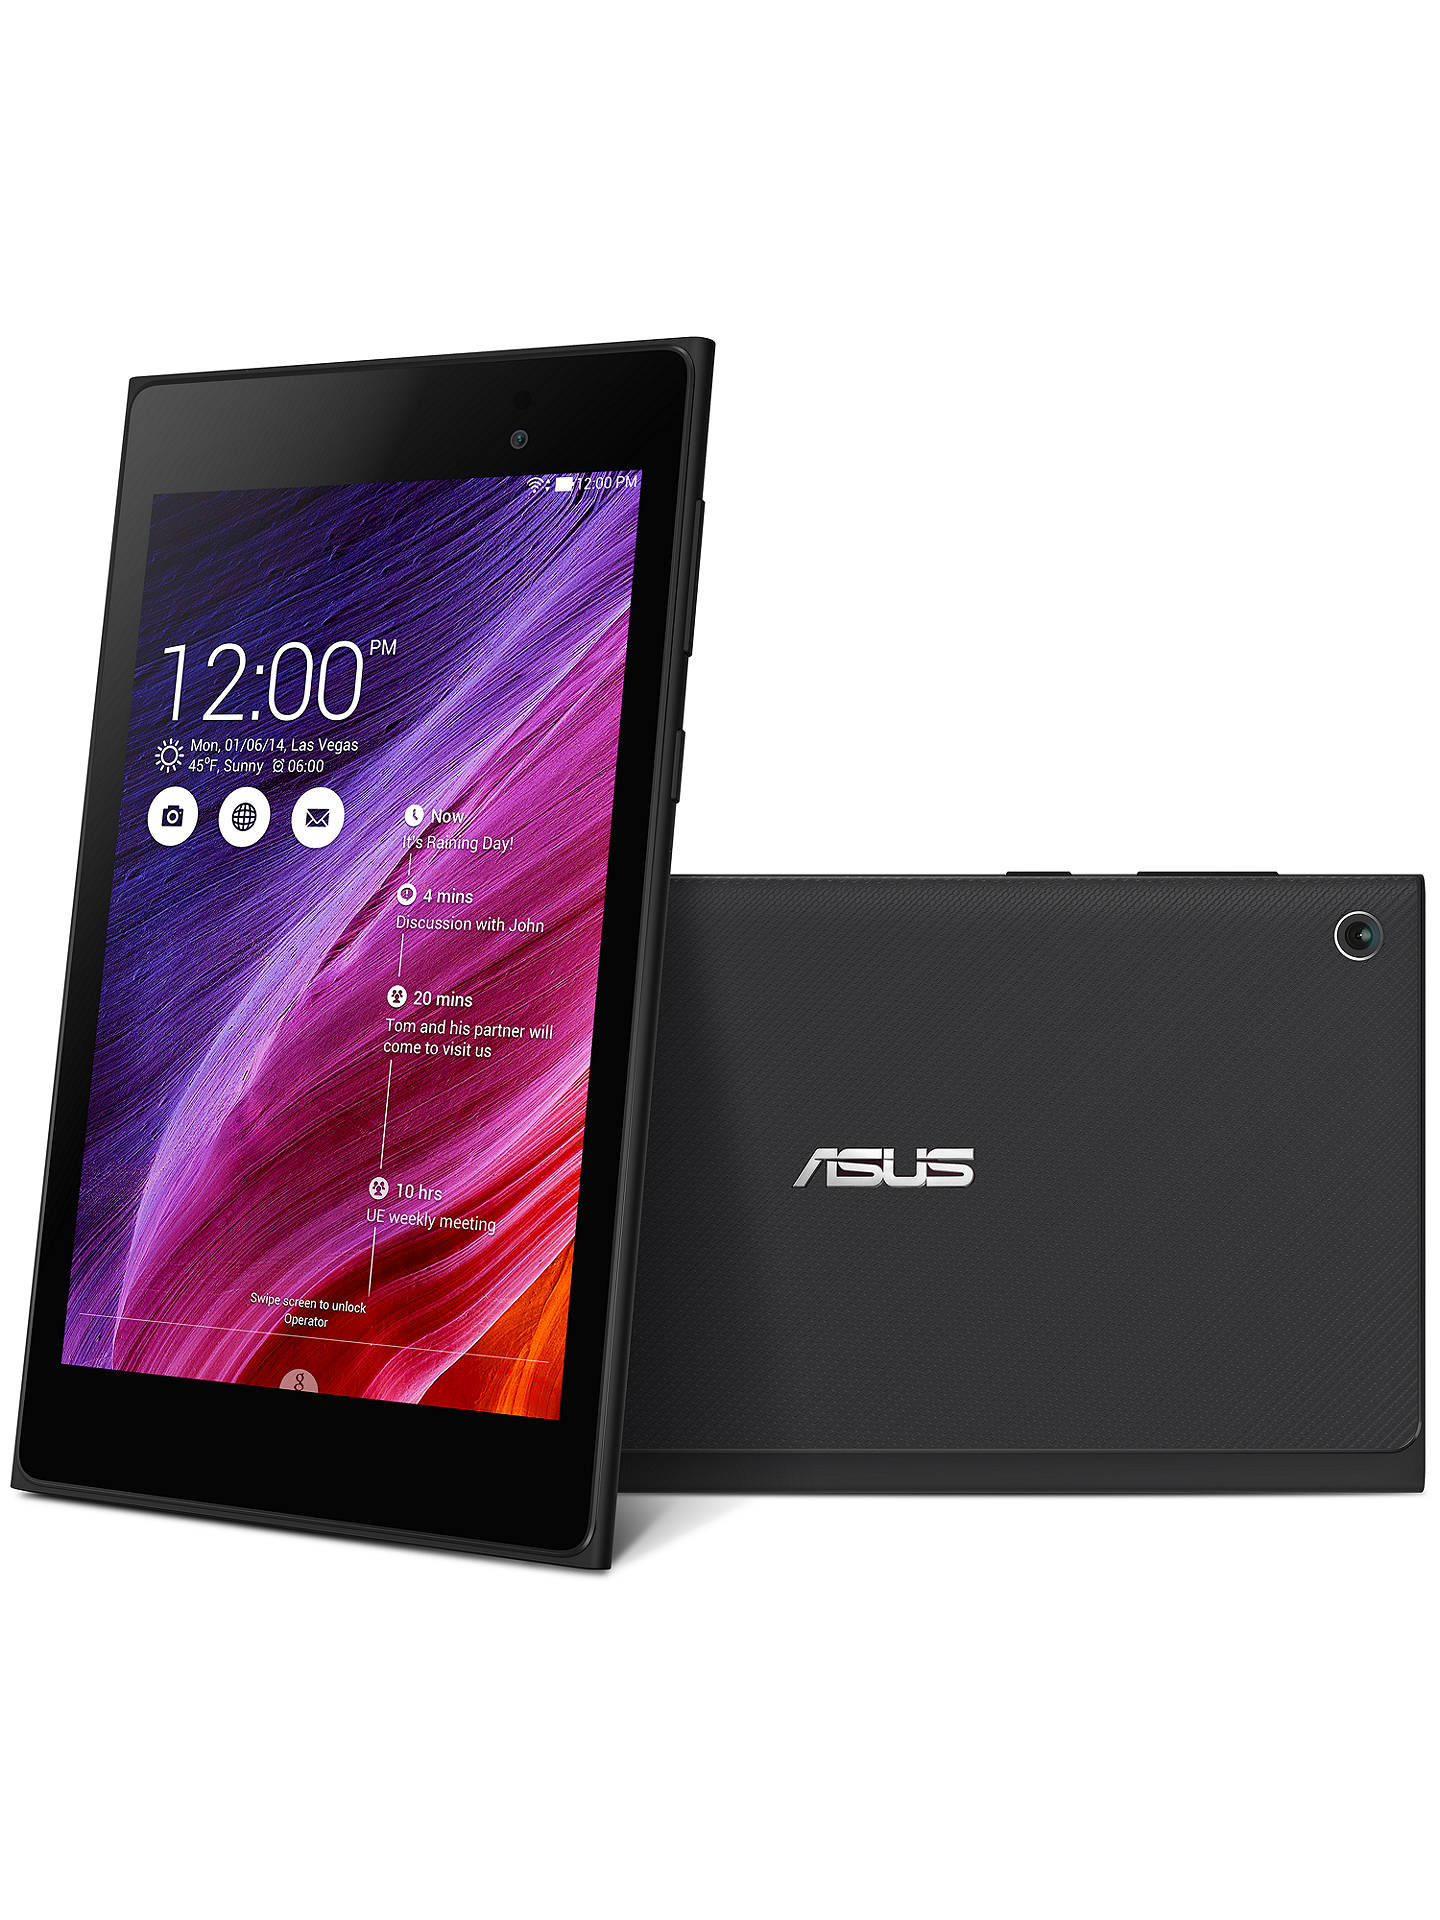 Asus Memo Pad 7 Me572c Tablet Intel Atom Android 7 Wi Fi 16gb At John Lewis Partners